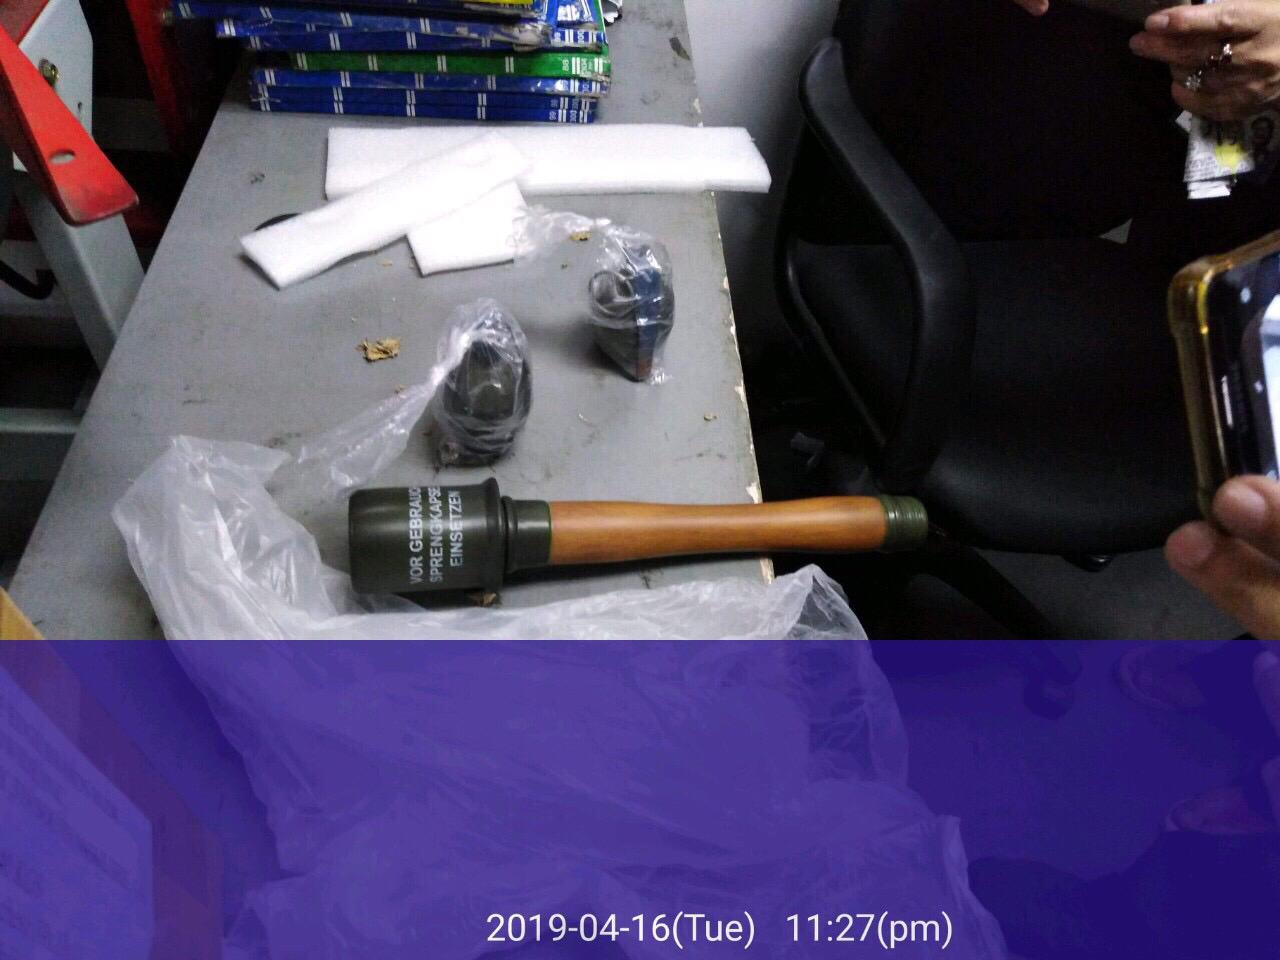 Cops seize 3 replica grenades in Pasay